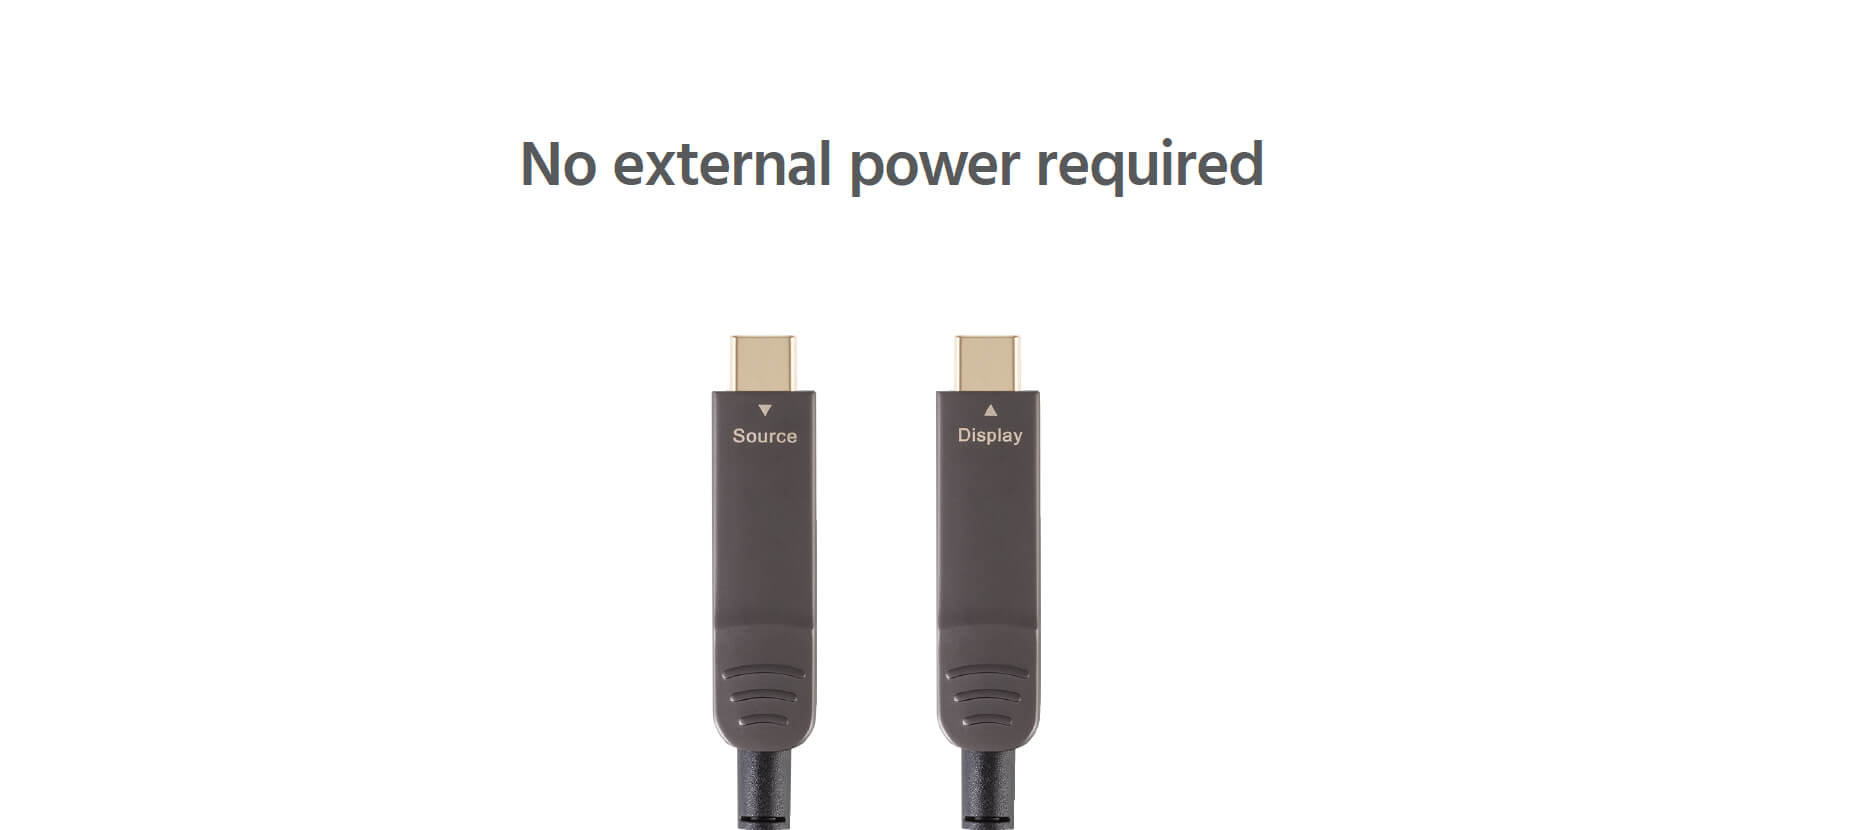 Câble USB vers USB-C de 50cm - Cordon USB USB-C Enroulé à Usage Intensif -  Câble USB-A vers USB-C en Fibre Aramide Robuste - Chargeur USB-C M/M 